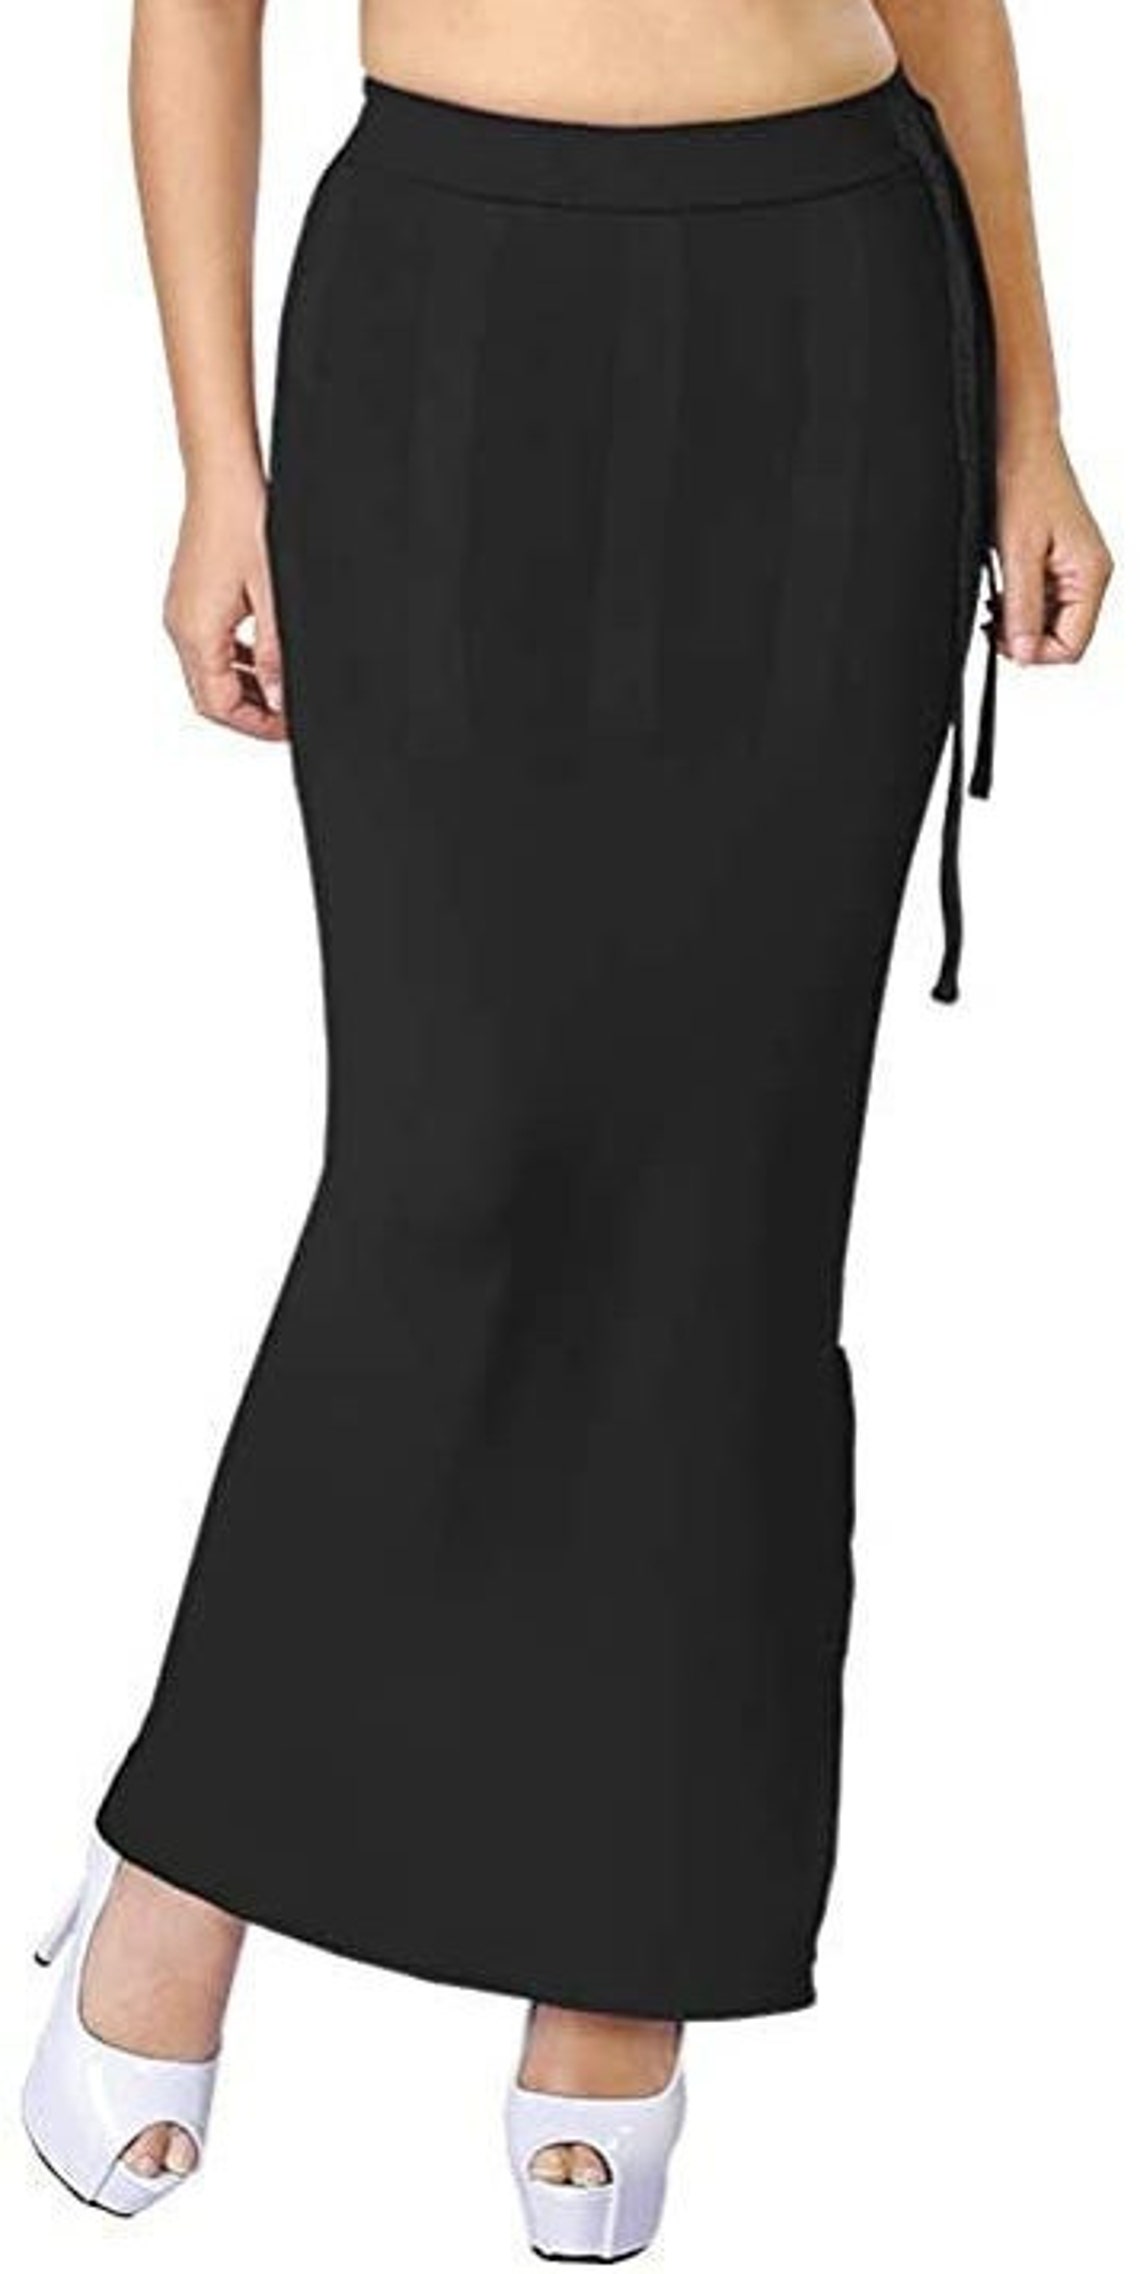 Black Saree Shapewear Drawstring Mermaid Petticoat Stitched - Etsy UK